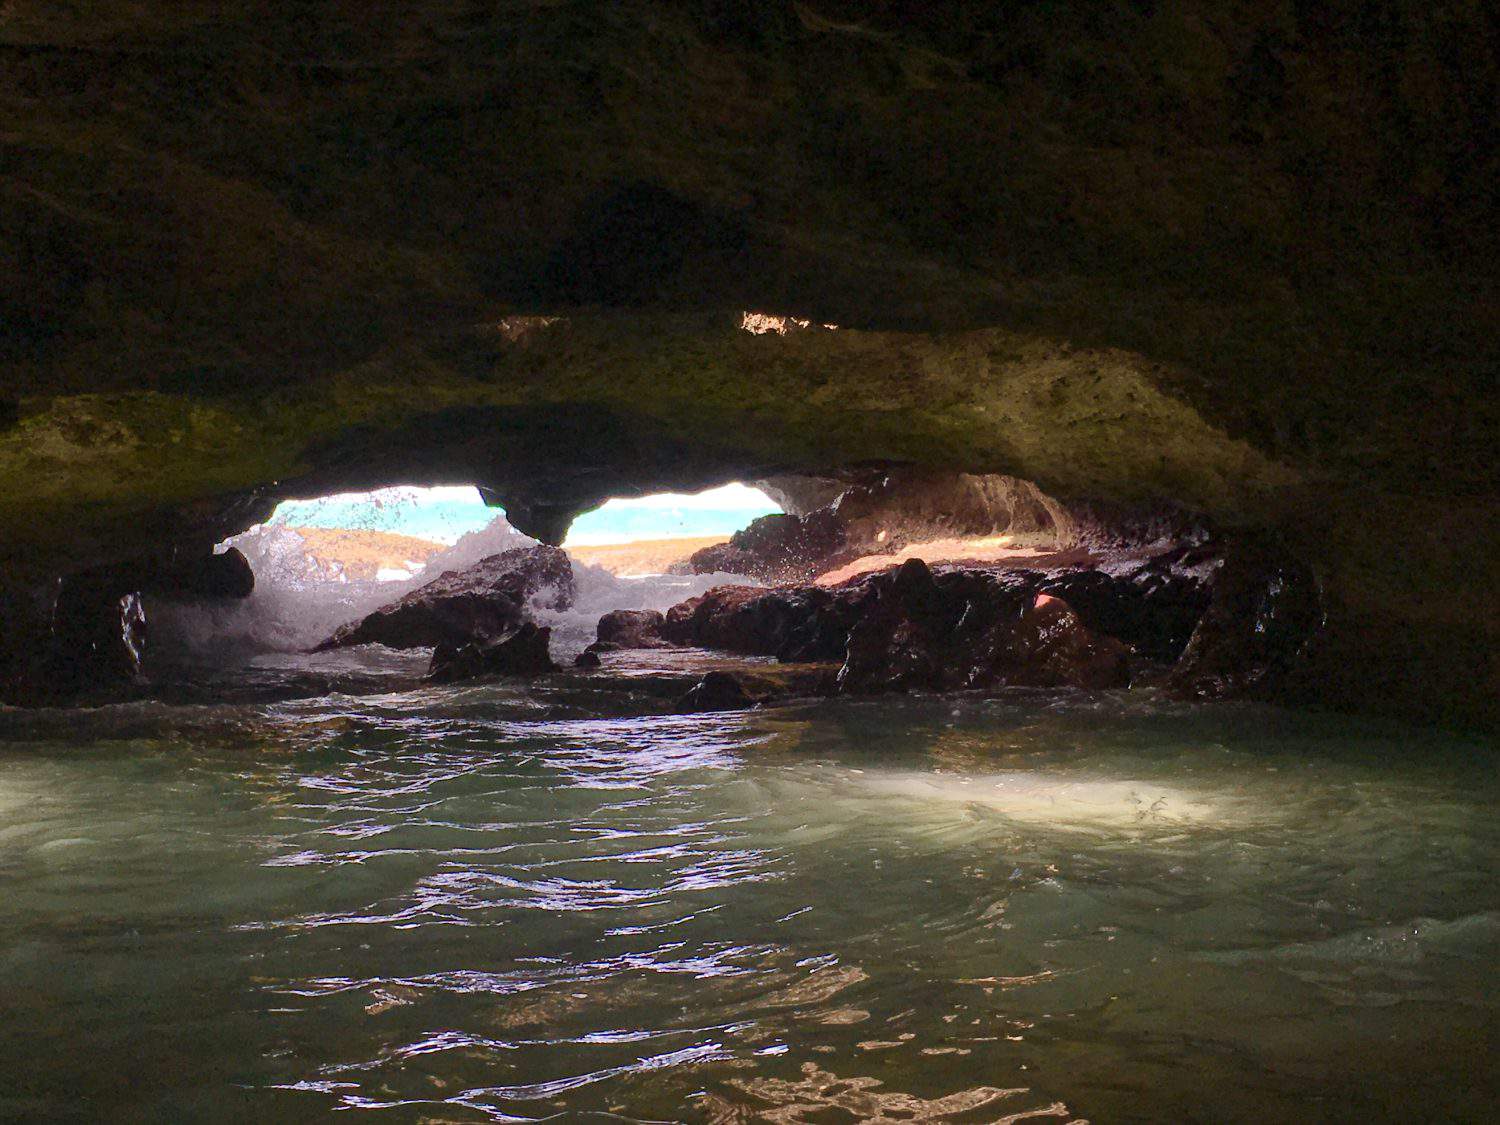 Mermaid caves on Oahu, Hawaii